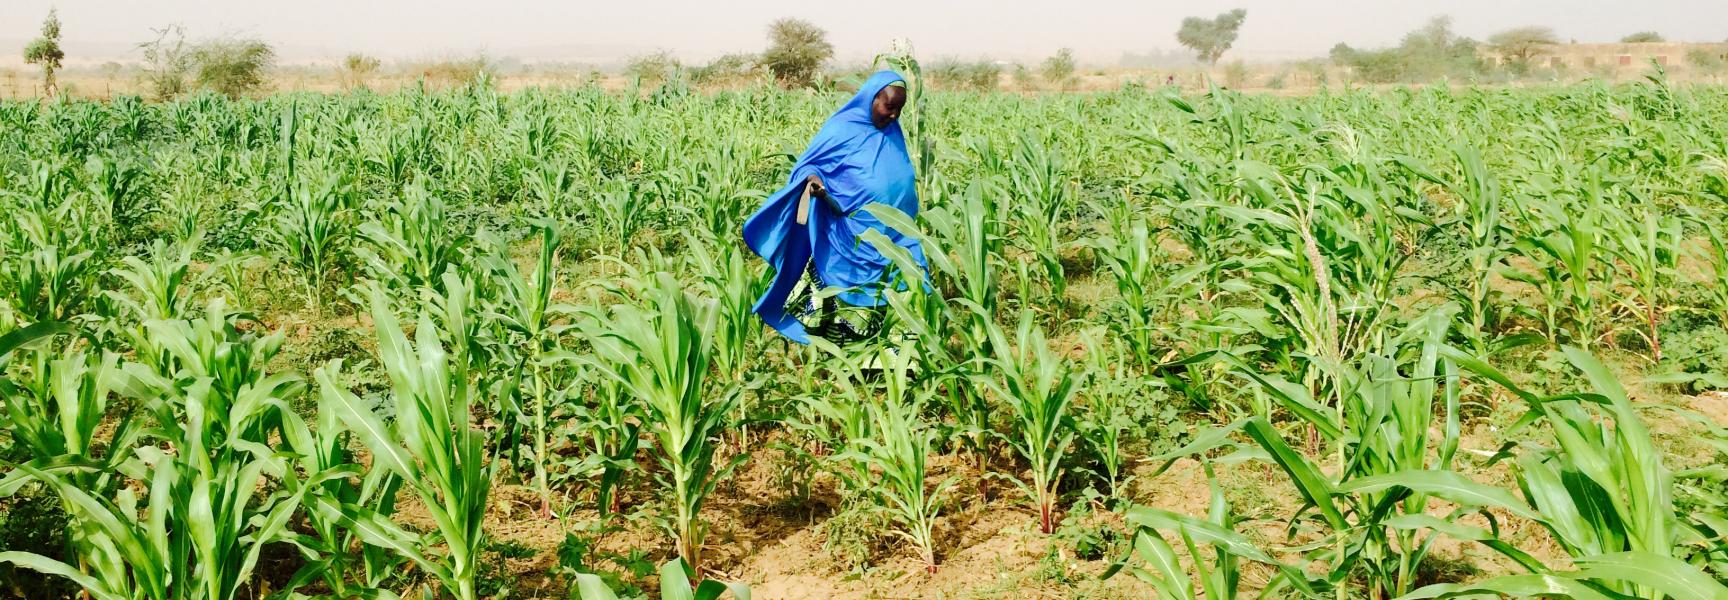 Mujer caminando en un cultivo en Níger